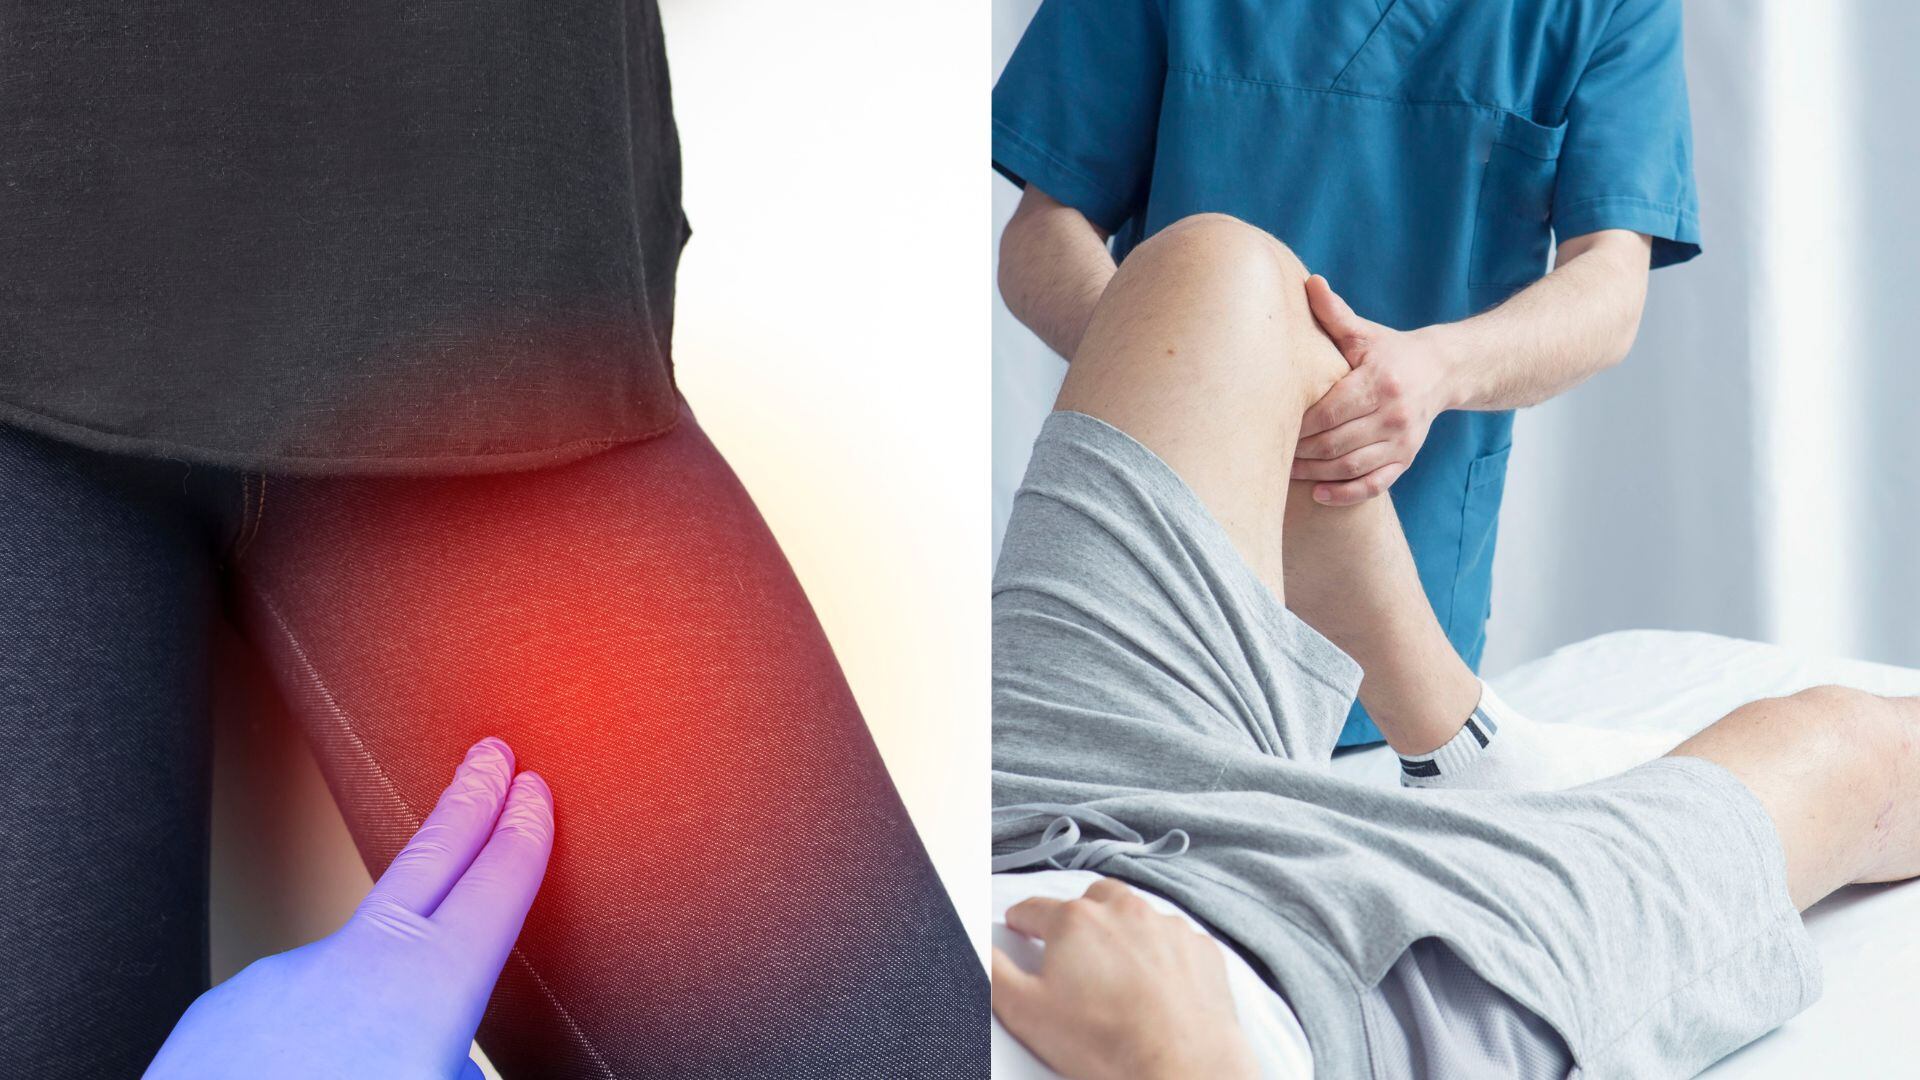 La pubalgia, una condición común entre deportistas, se caracteriza por dolor e inflamación en la región del pubis, afectando la vida deportiva y cotidiana de quienes la padecen.